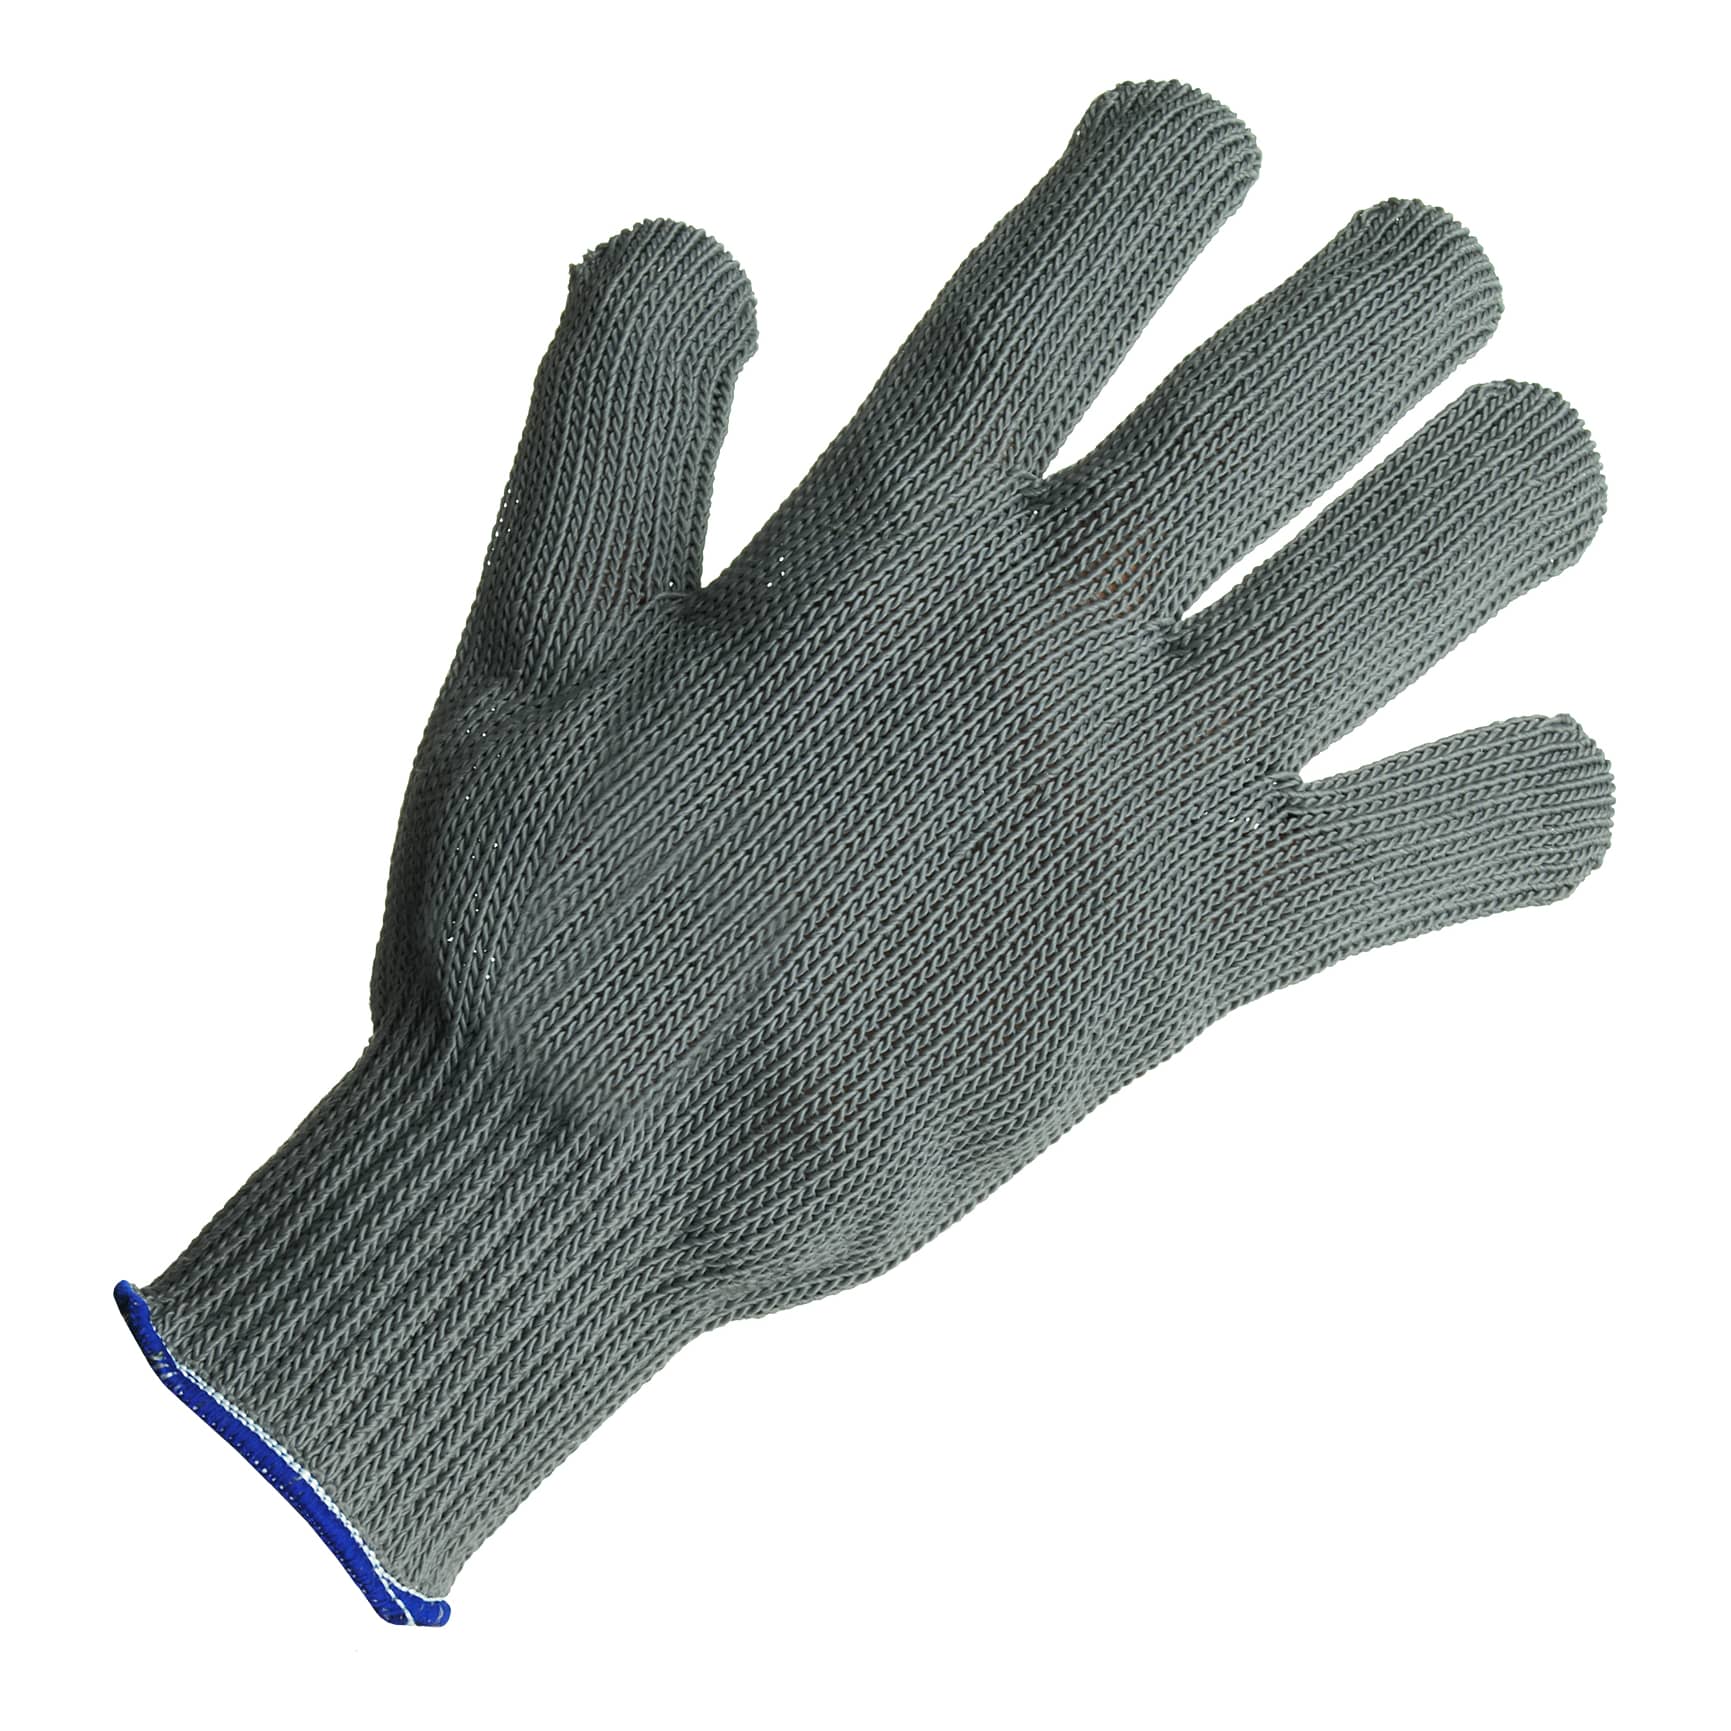 Offshore Angler Fillet Gloves - Cabelas - OFFSHORE ANGLER - Fillet